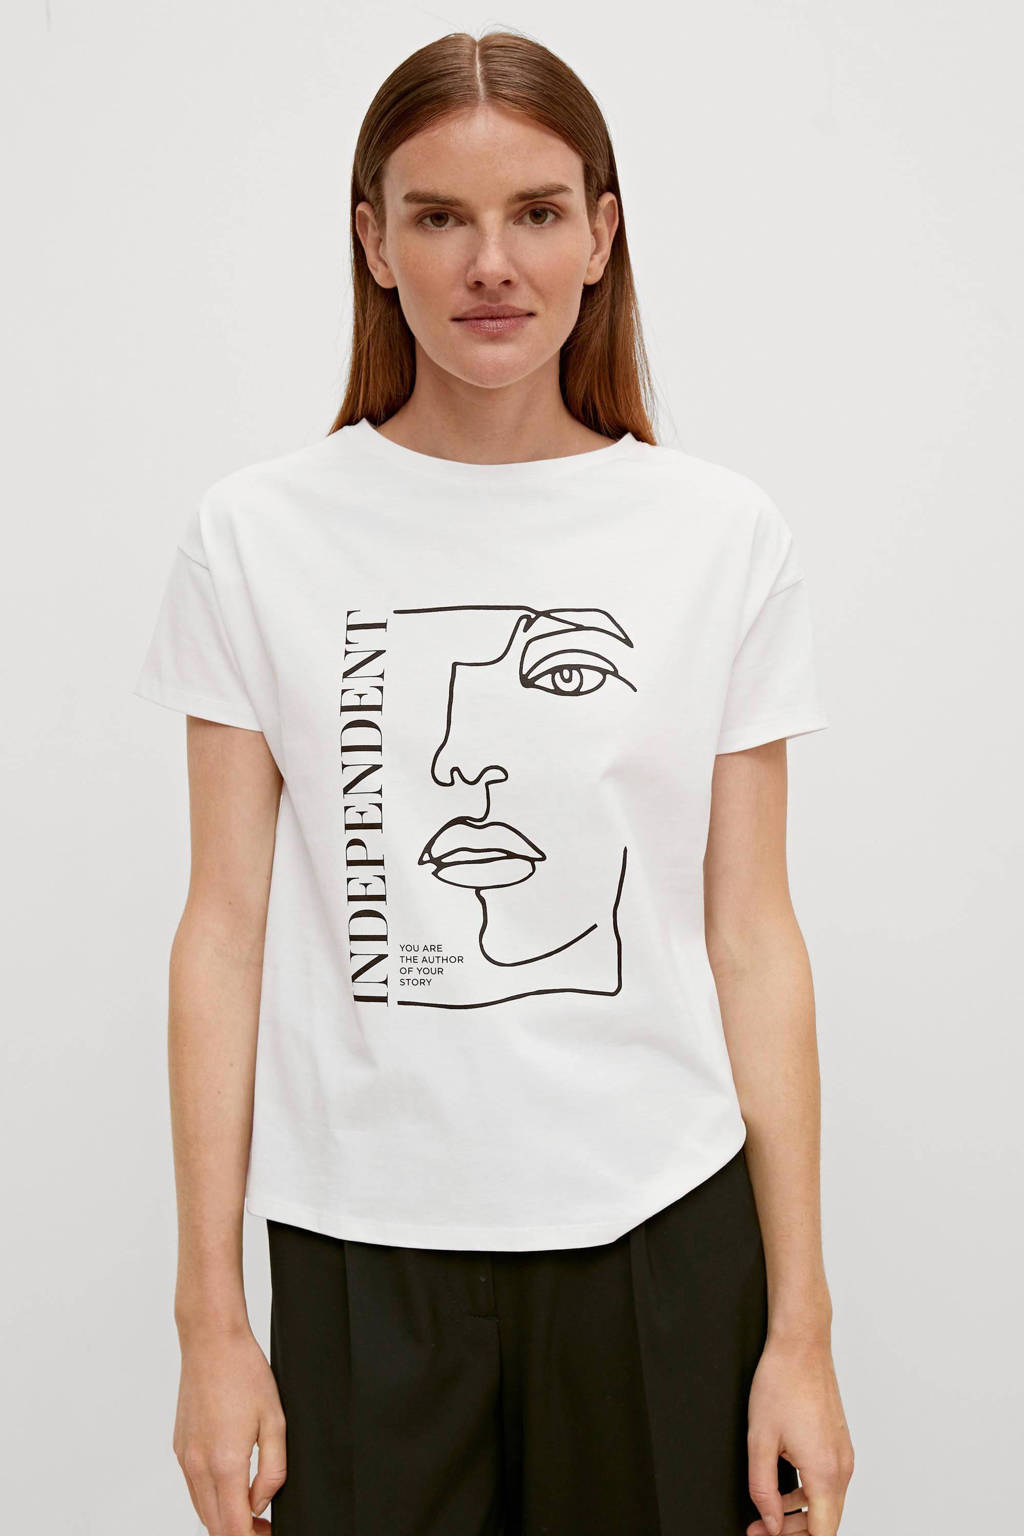 Oppervlakkig Opsplitsen oriëntatie comma T-shirt met printopdruk wit | wehkamp